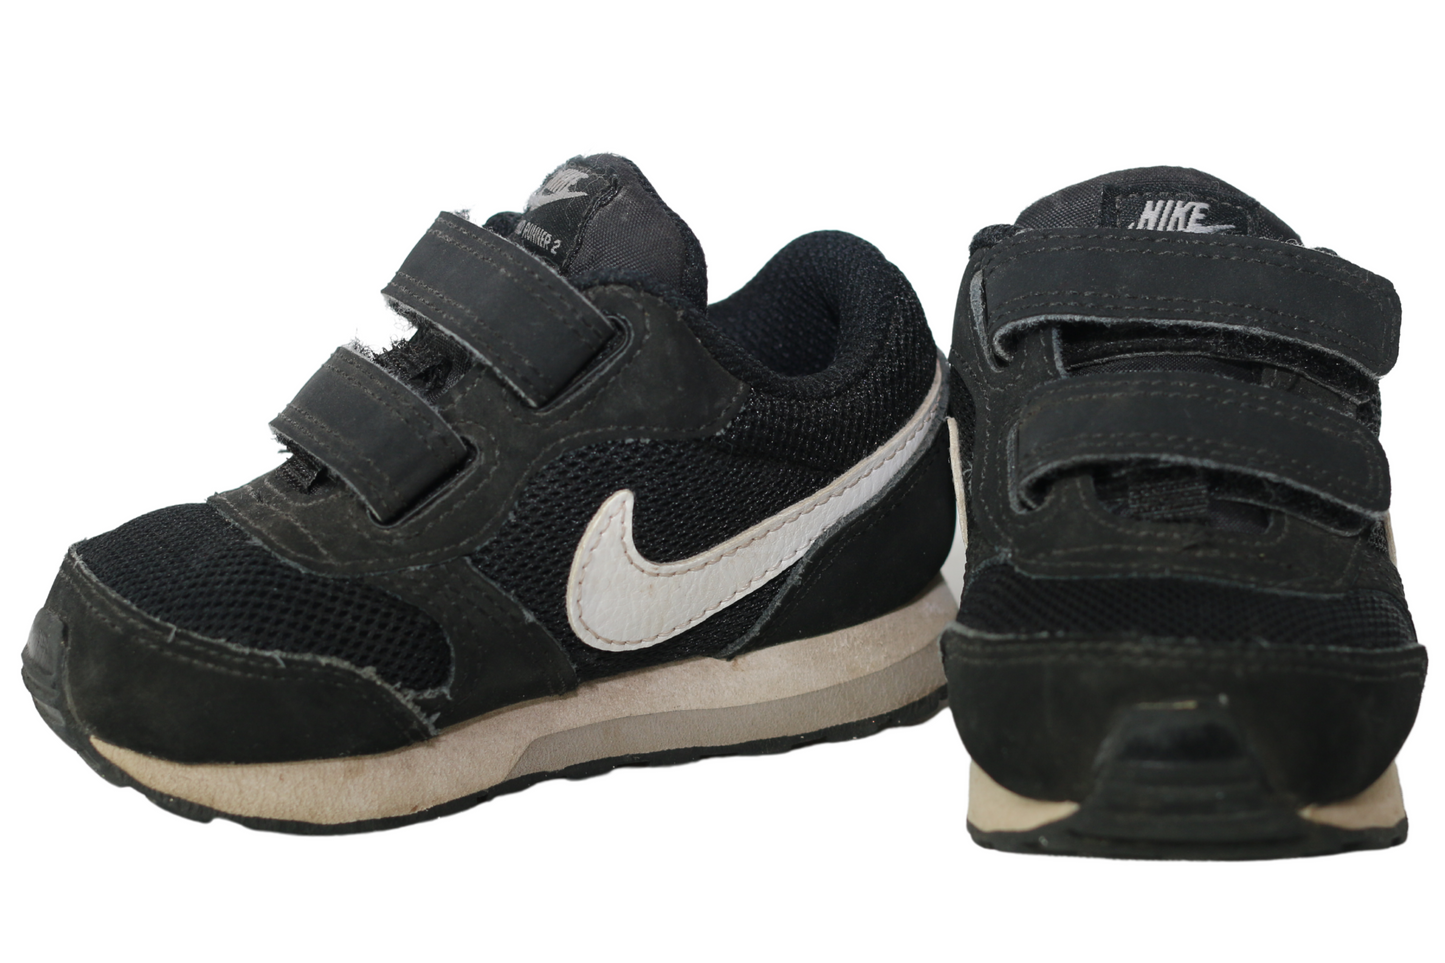 Nike MD Runner 2 Sneakers